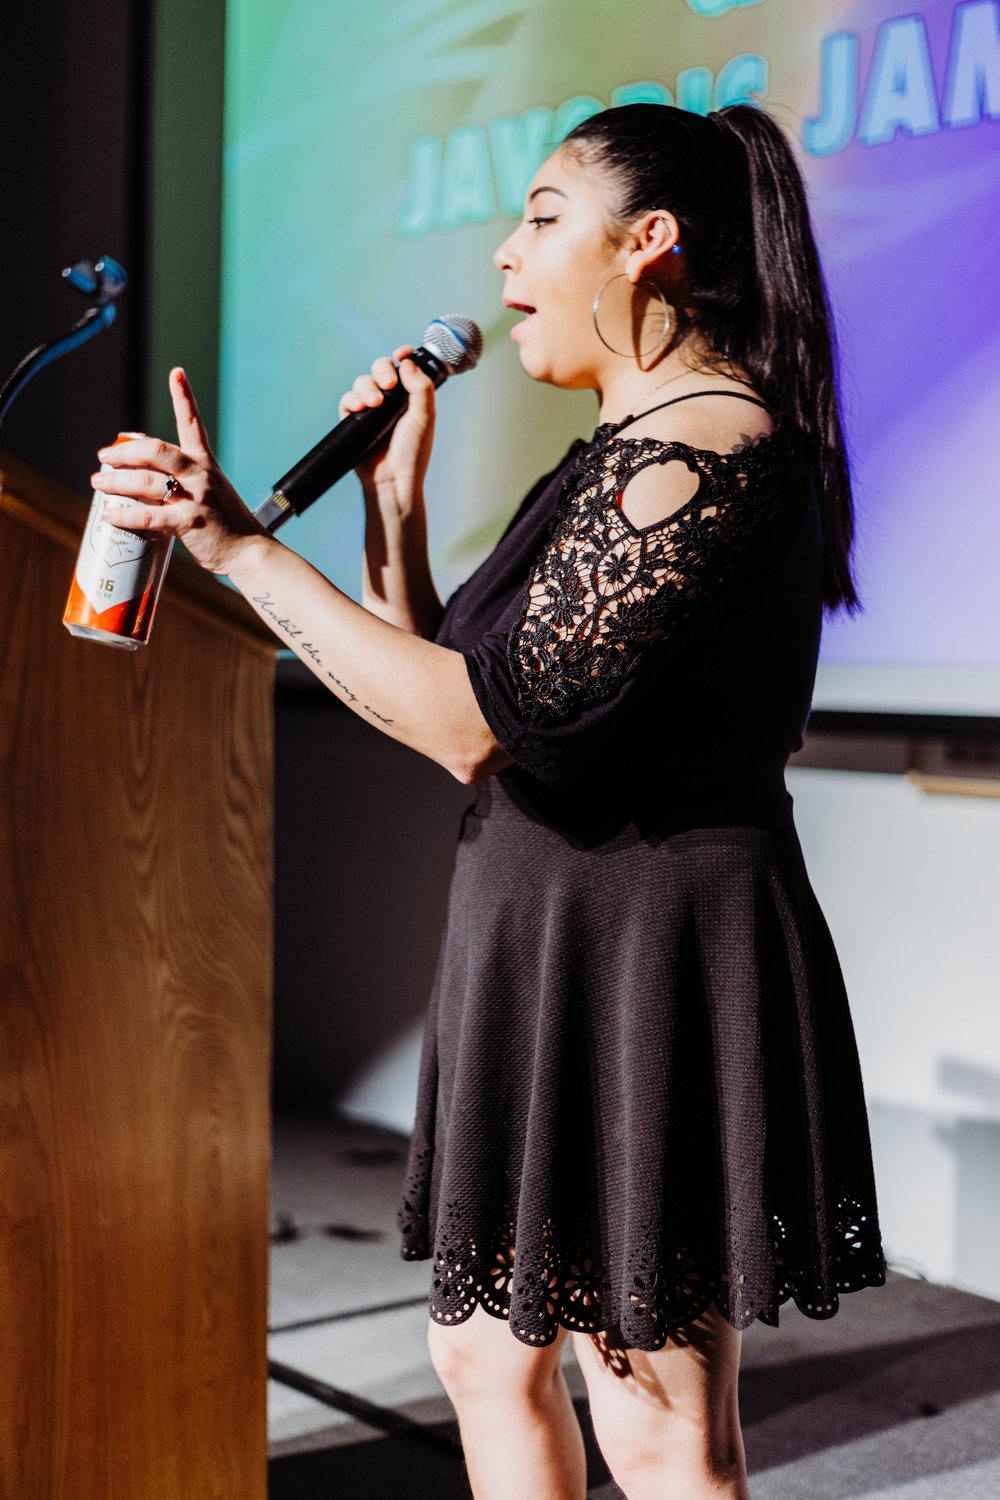  Anjelica Fraga speaks during the DAM Awards. 